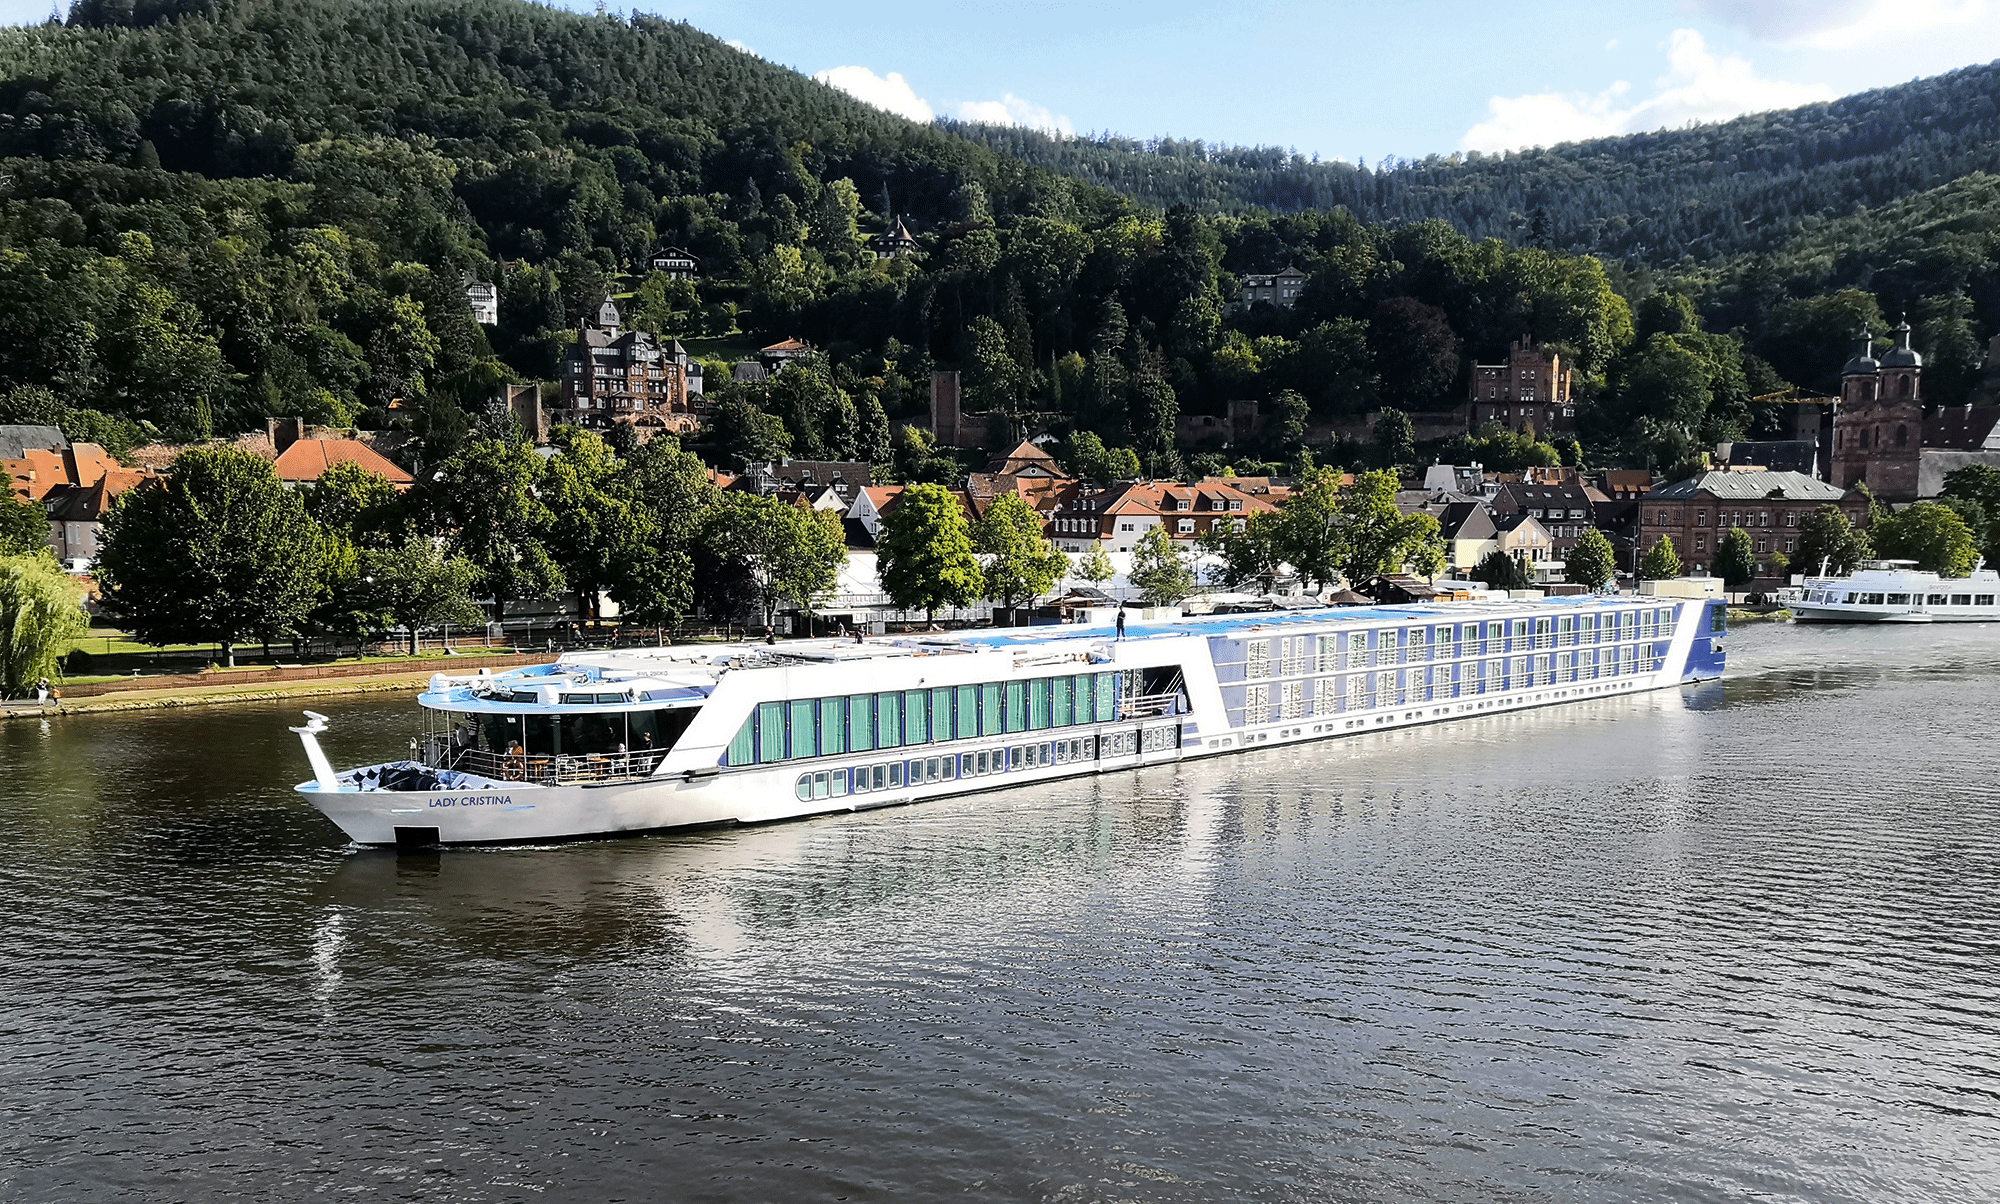 M/S Lady Cristina 12 Tage Flusskreuzfahrt inkl. Romantischer Rhein und Mosel